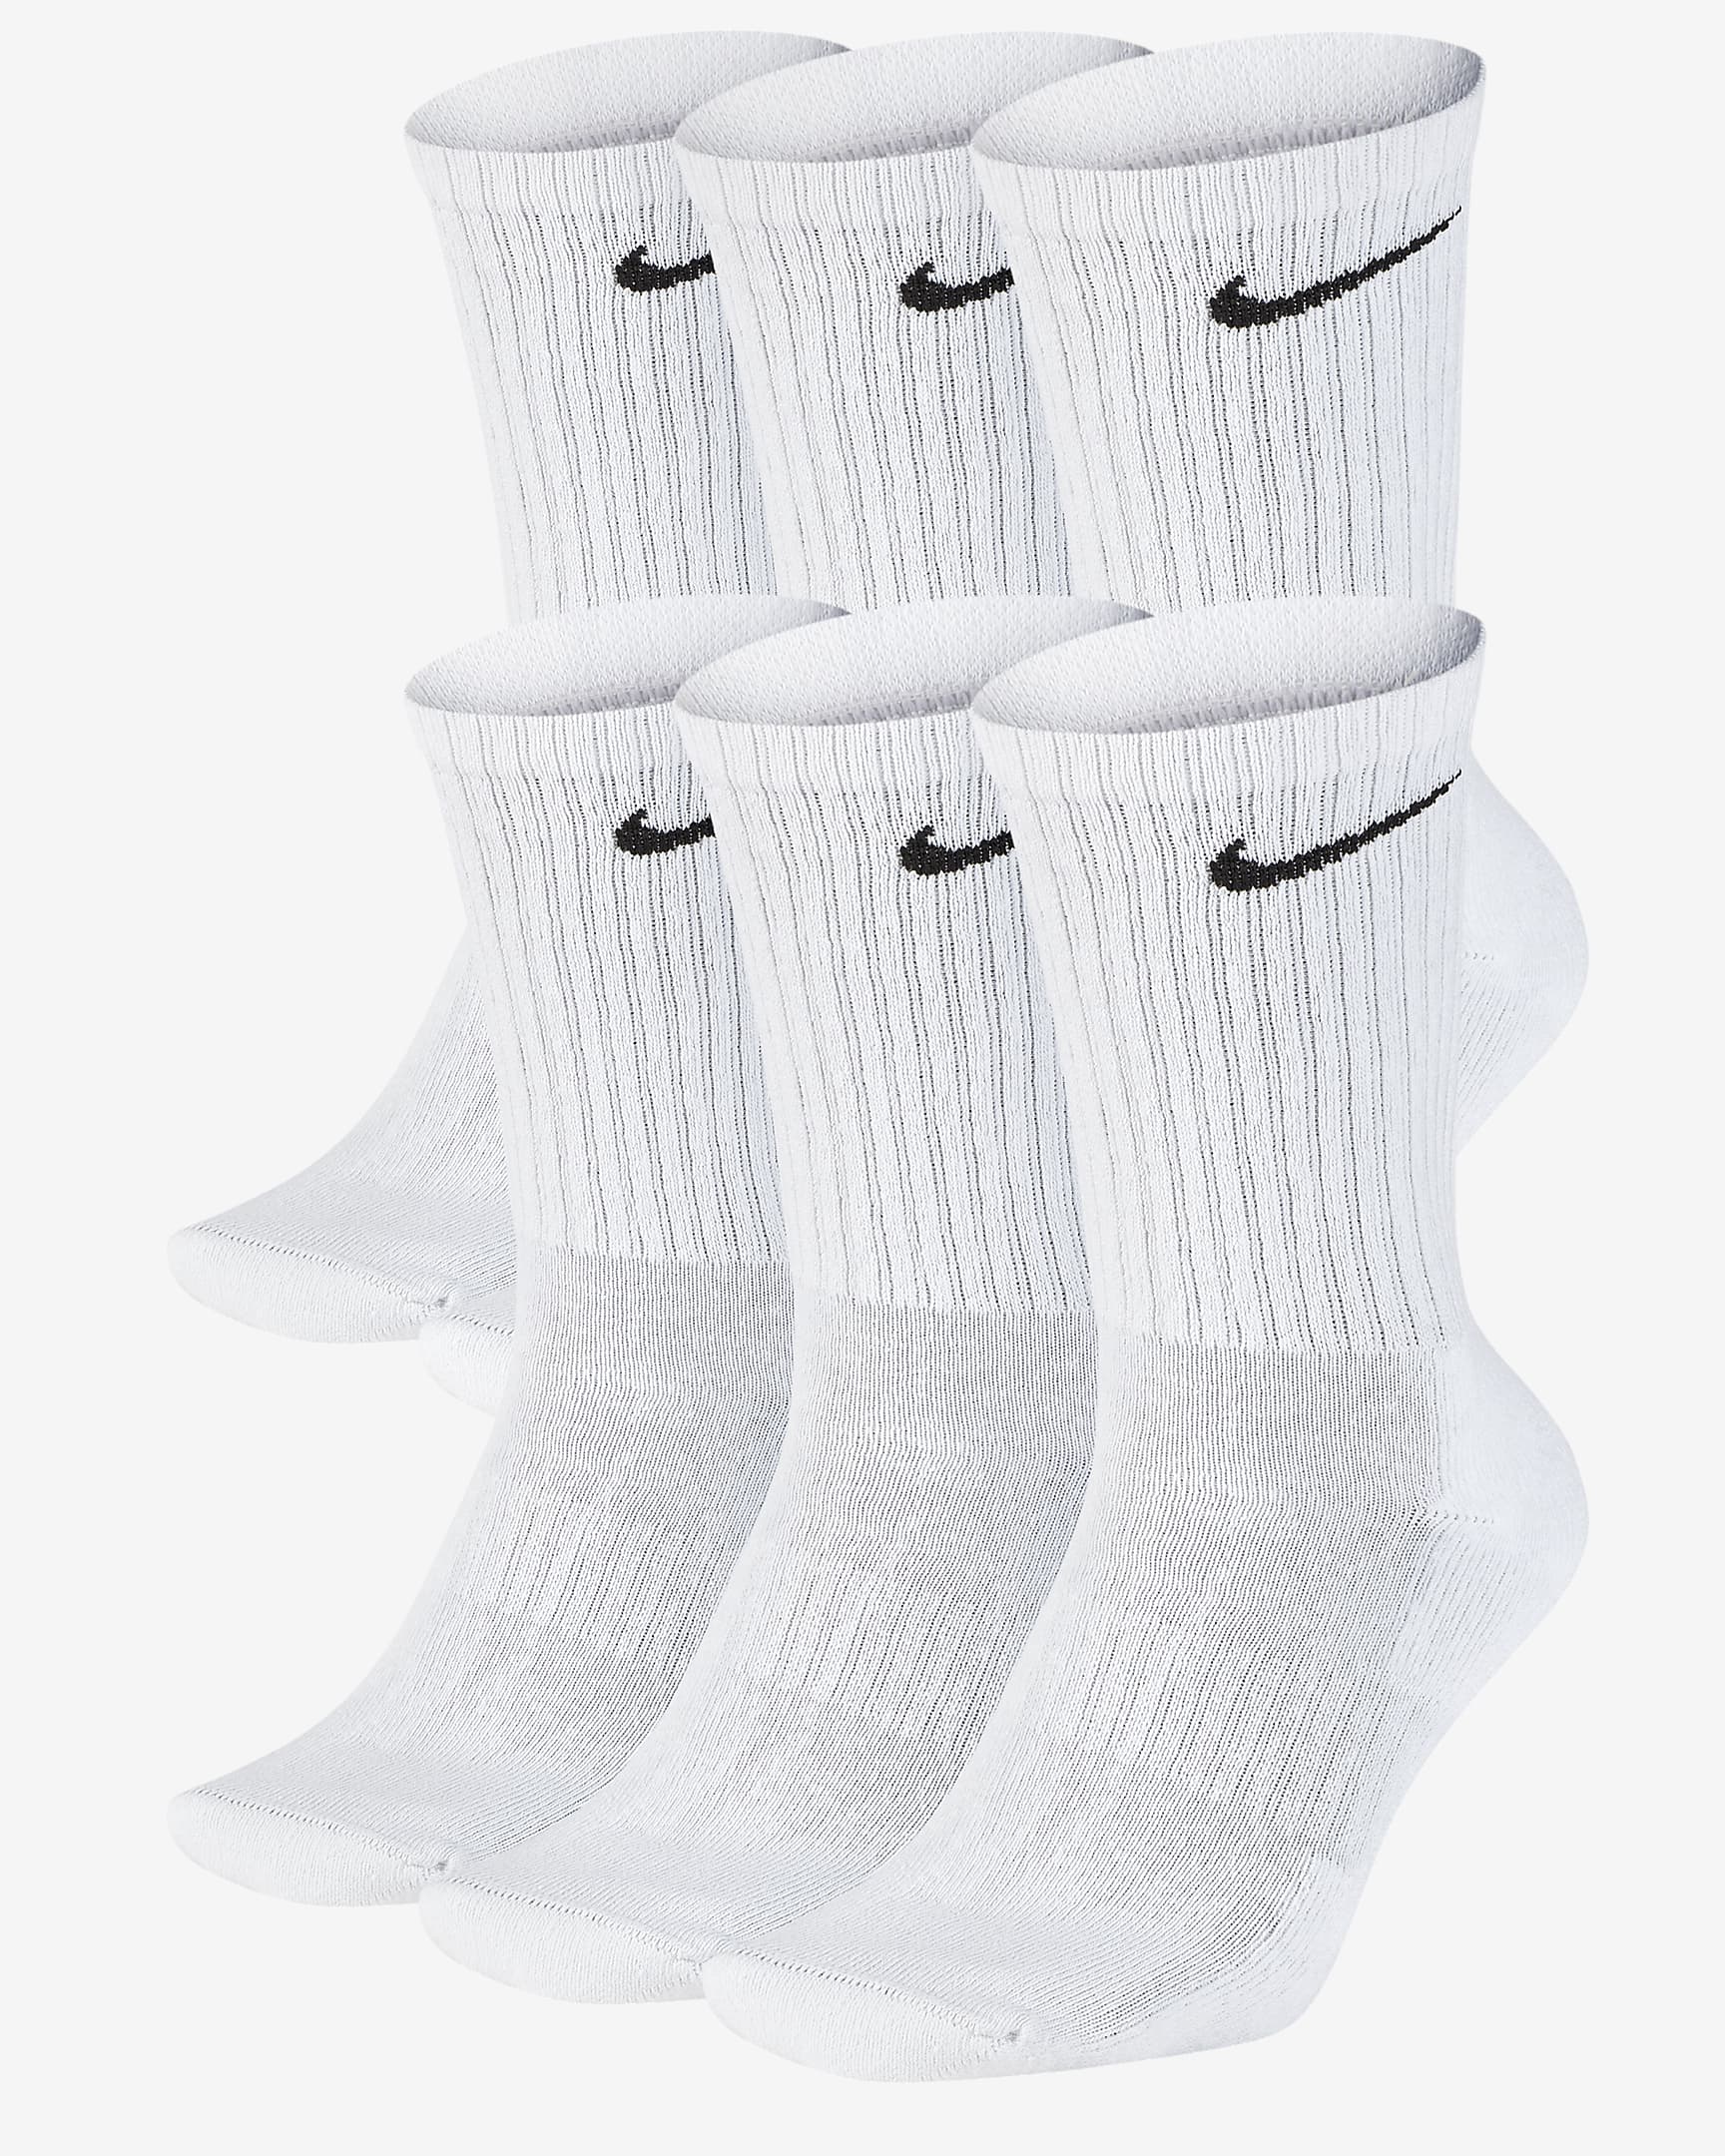 Nike socks